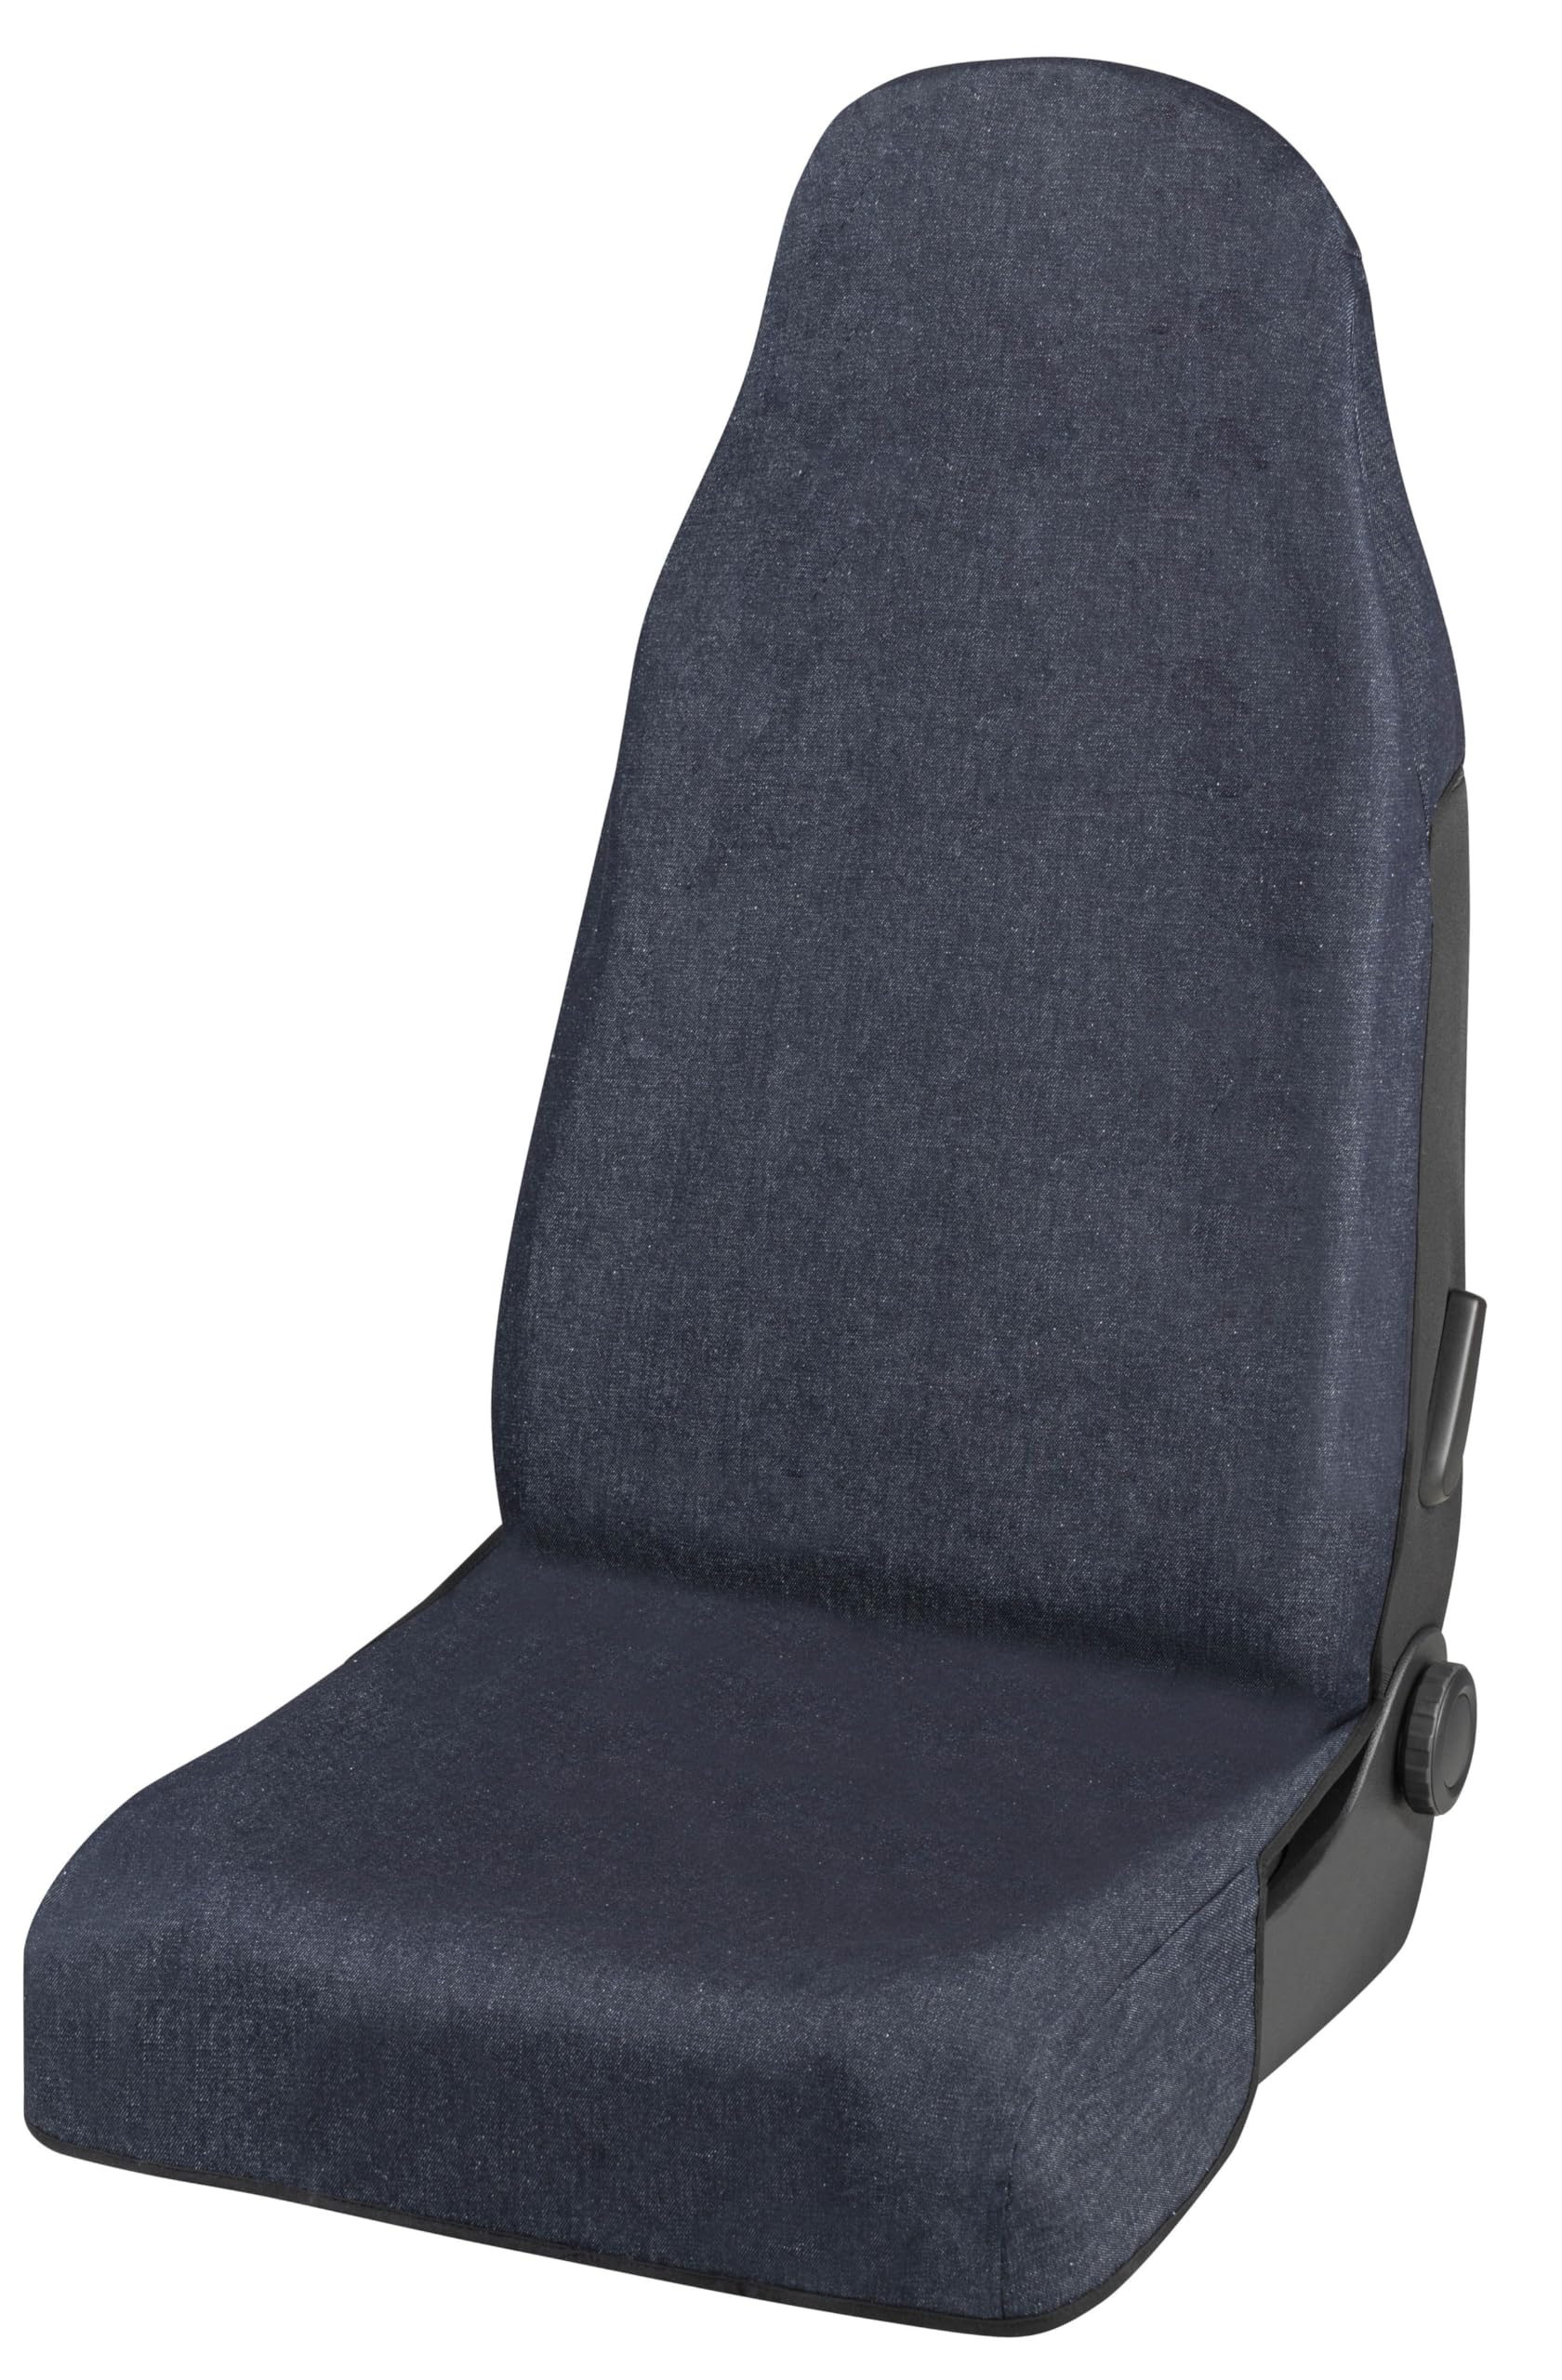 Autositzbezug Jeans blau für einen Vordersitz, Schonbezug universal passend, PKW-Sitzbezug 47024 von Walser